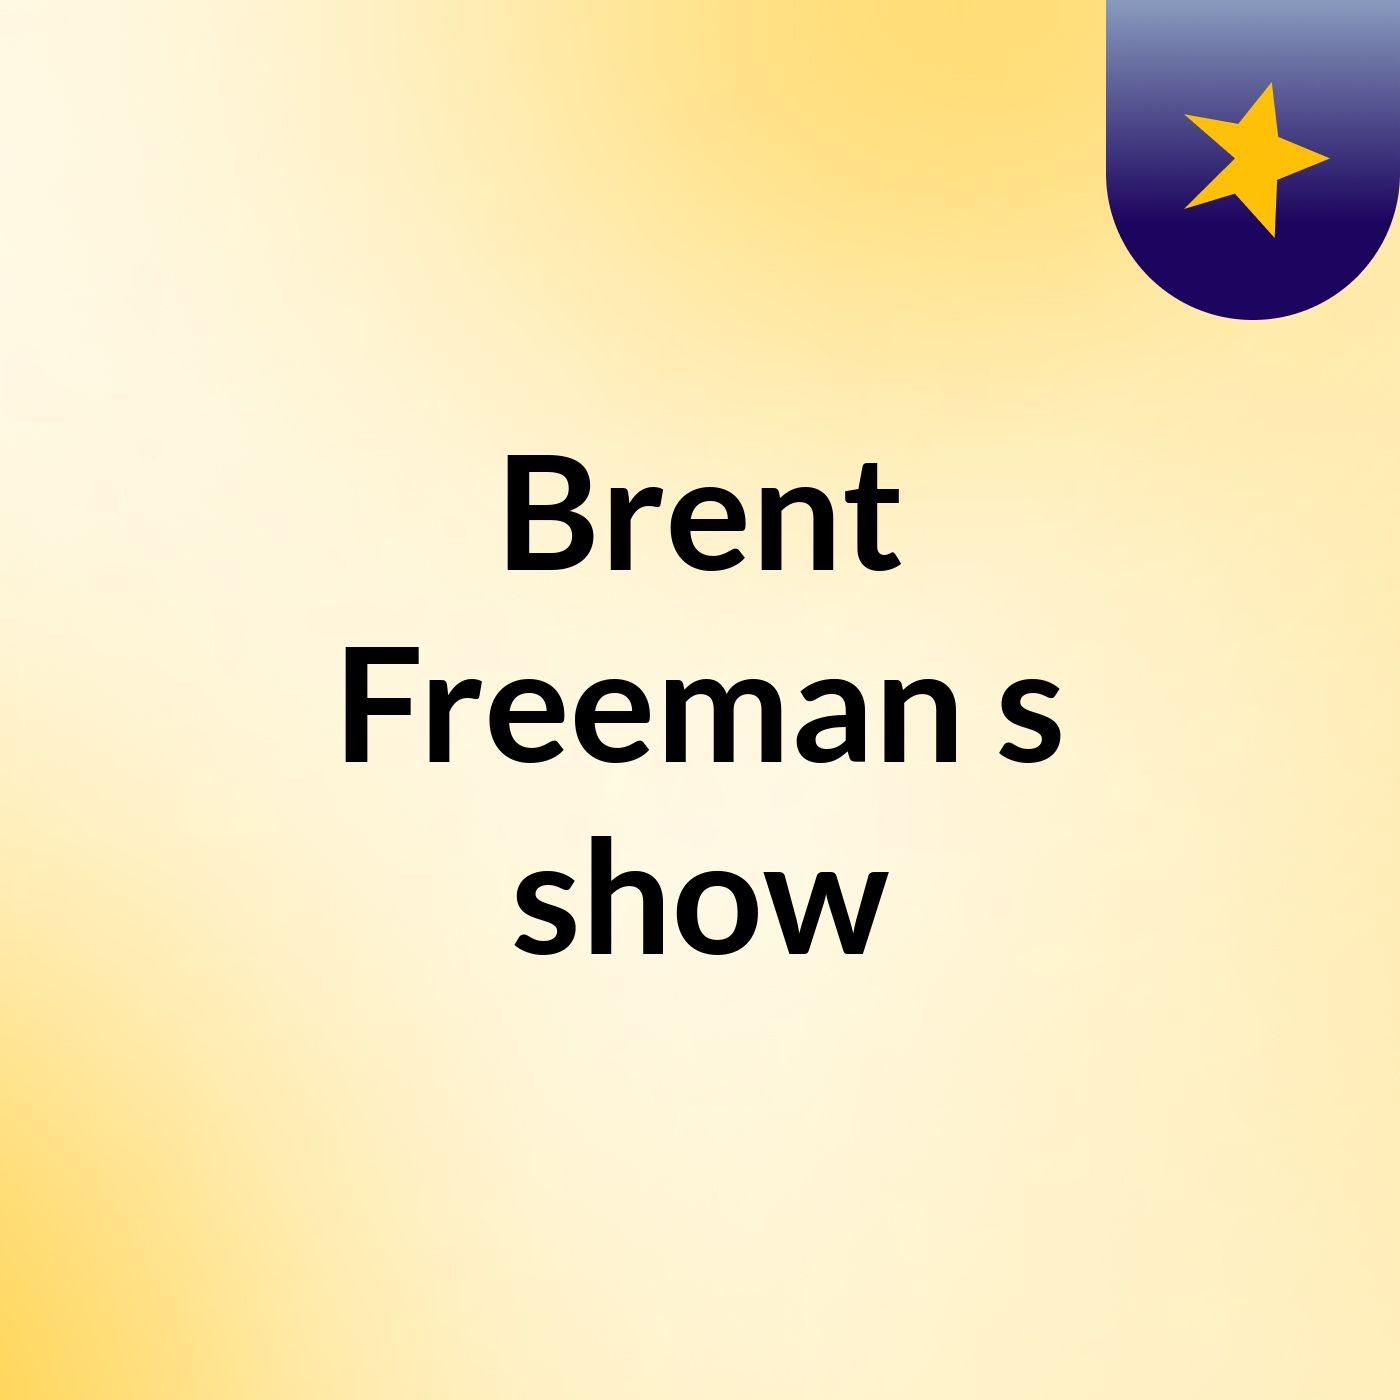 Episode 21 - Brent Freeman's show